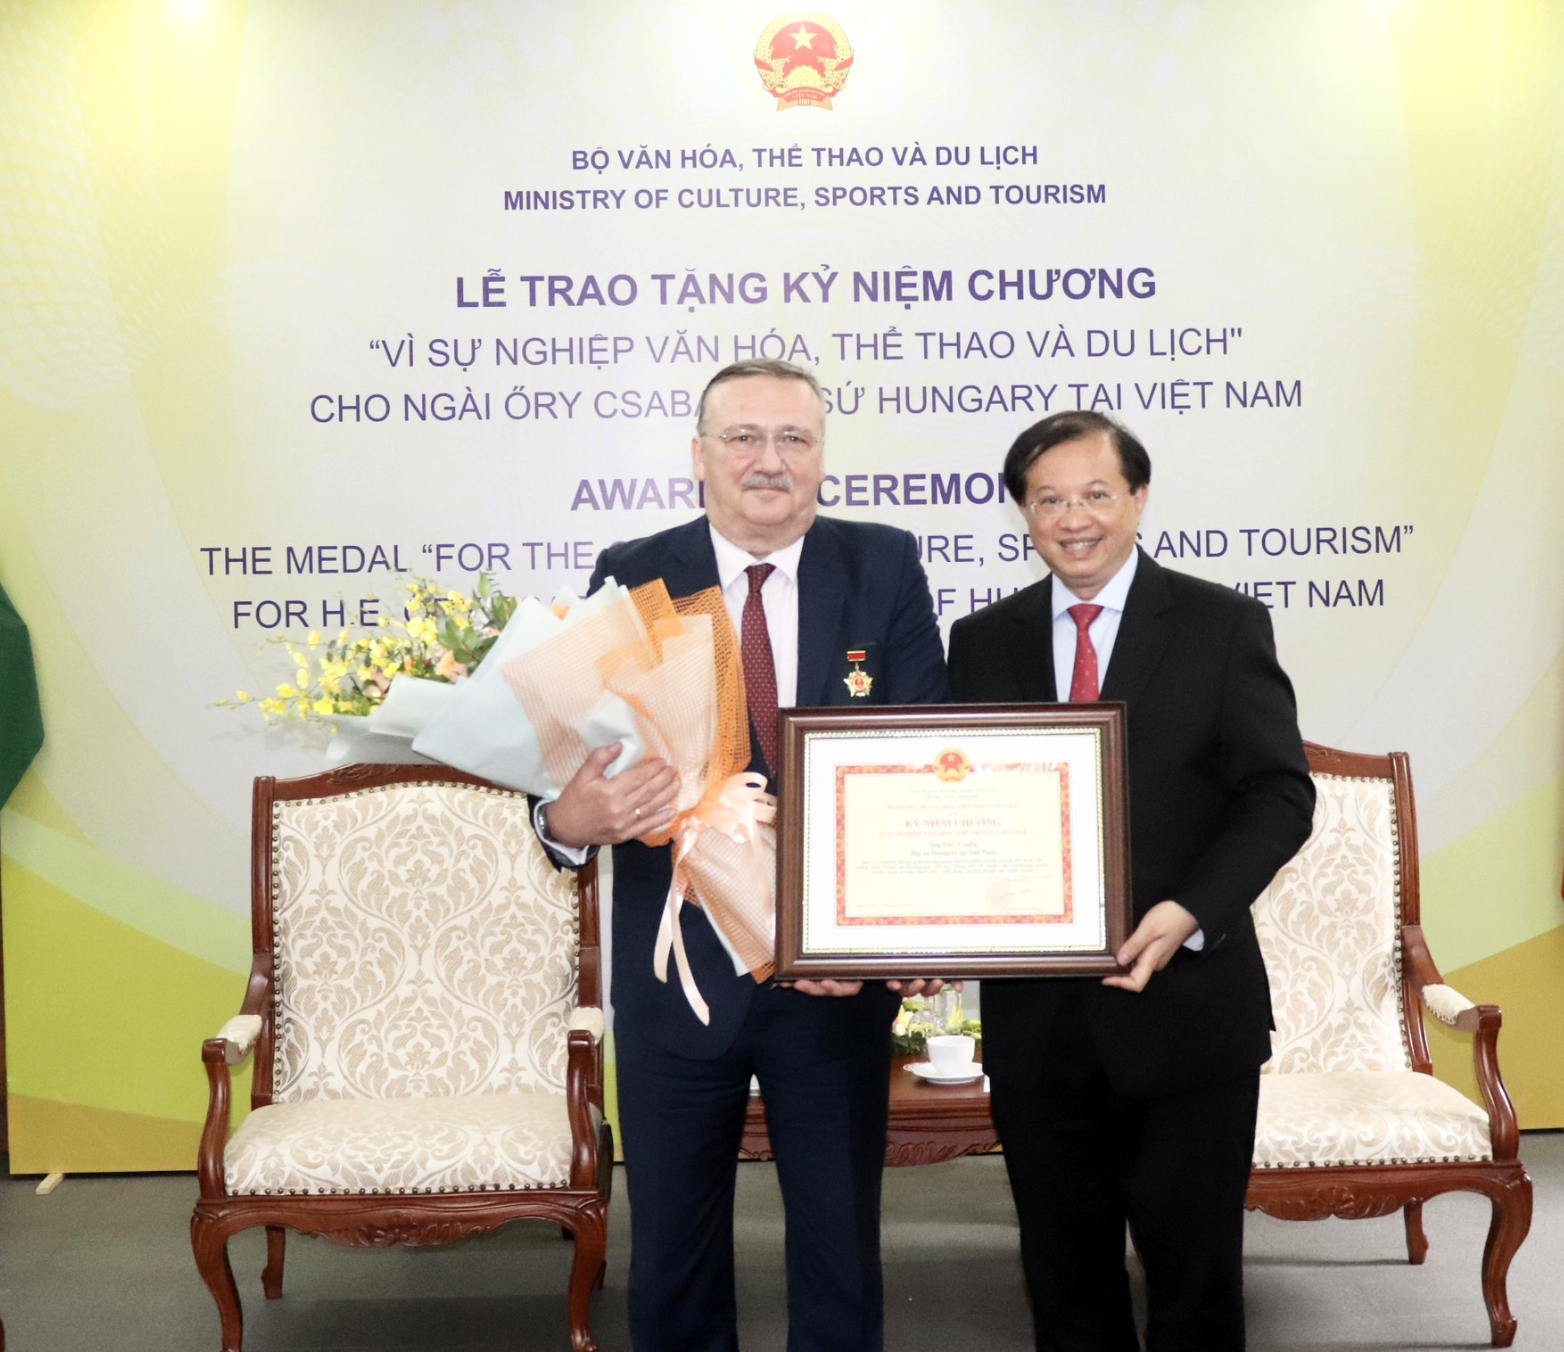 Trao Kỷ niệm chương “Vì sự nghiệp Văn hóa, Thể thao và Du lịch” cho Đại sứ Hungary tại Việt Nam